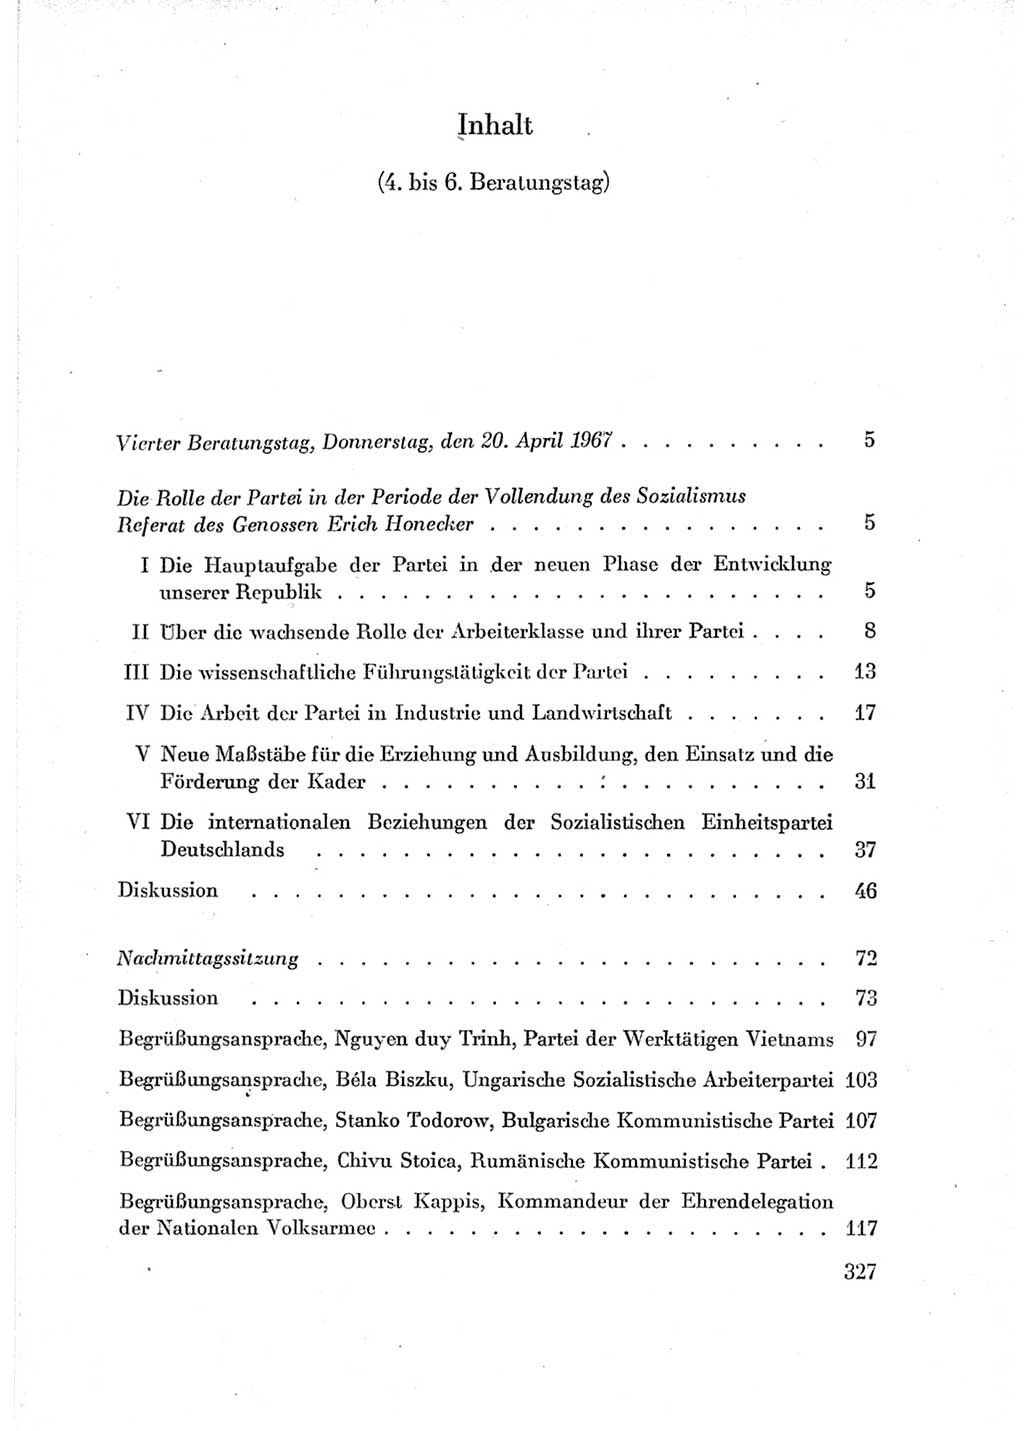 Protokoll der Verhandlungen des Ⅶ. Parteitages der Sozialistischen Einheitspartei Deutschlands (SED) [Deutsche Demokratische Republik (DDR)] 1967, Band Ⅱ, Seite 327 (Prot. Verh. Ⅶ. PT SED DDR 1967, Bd. Ⅱ, S. 327)